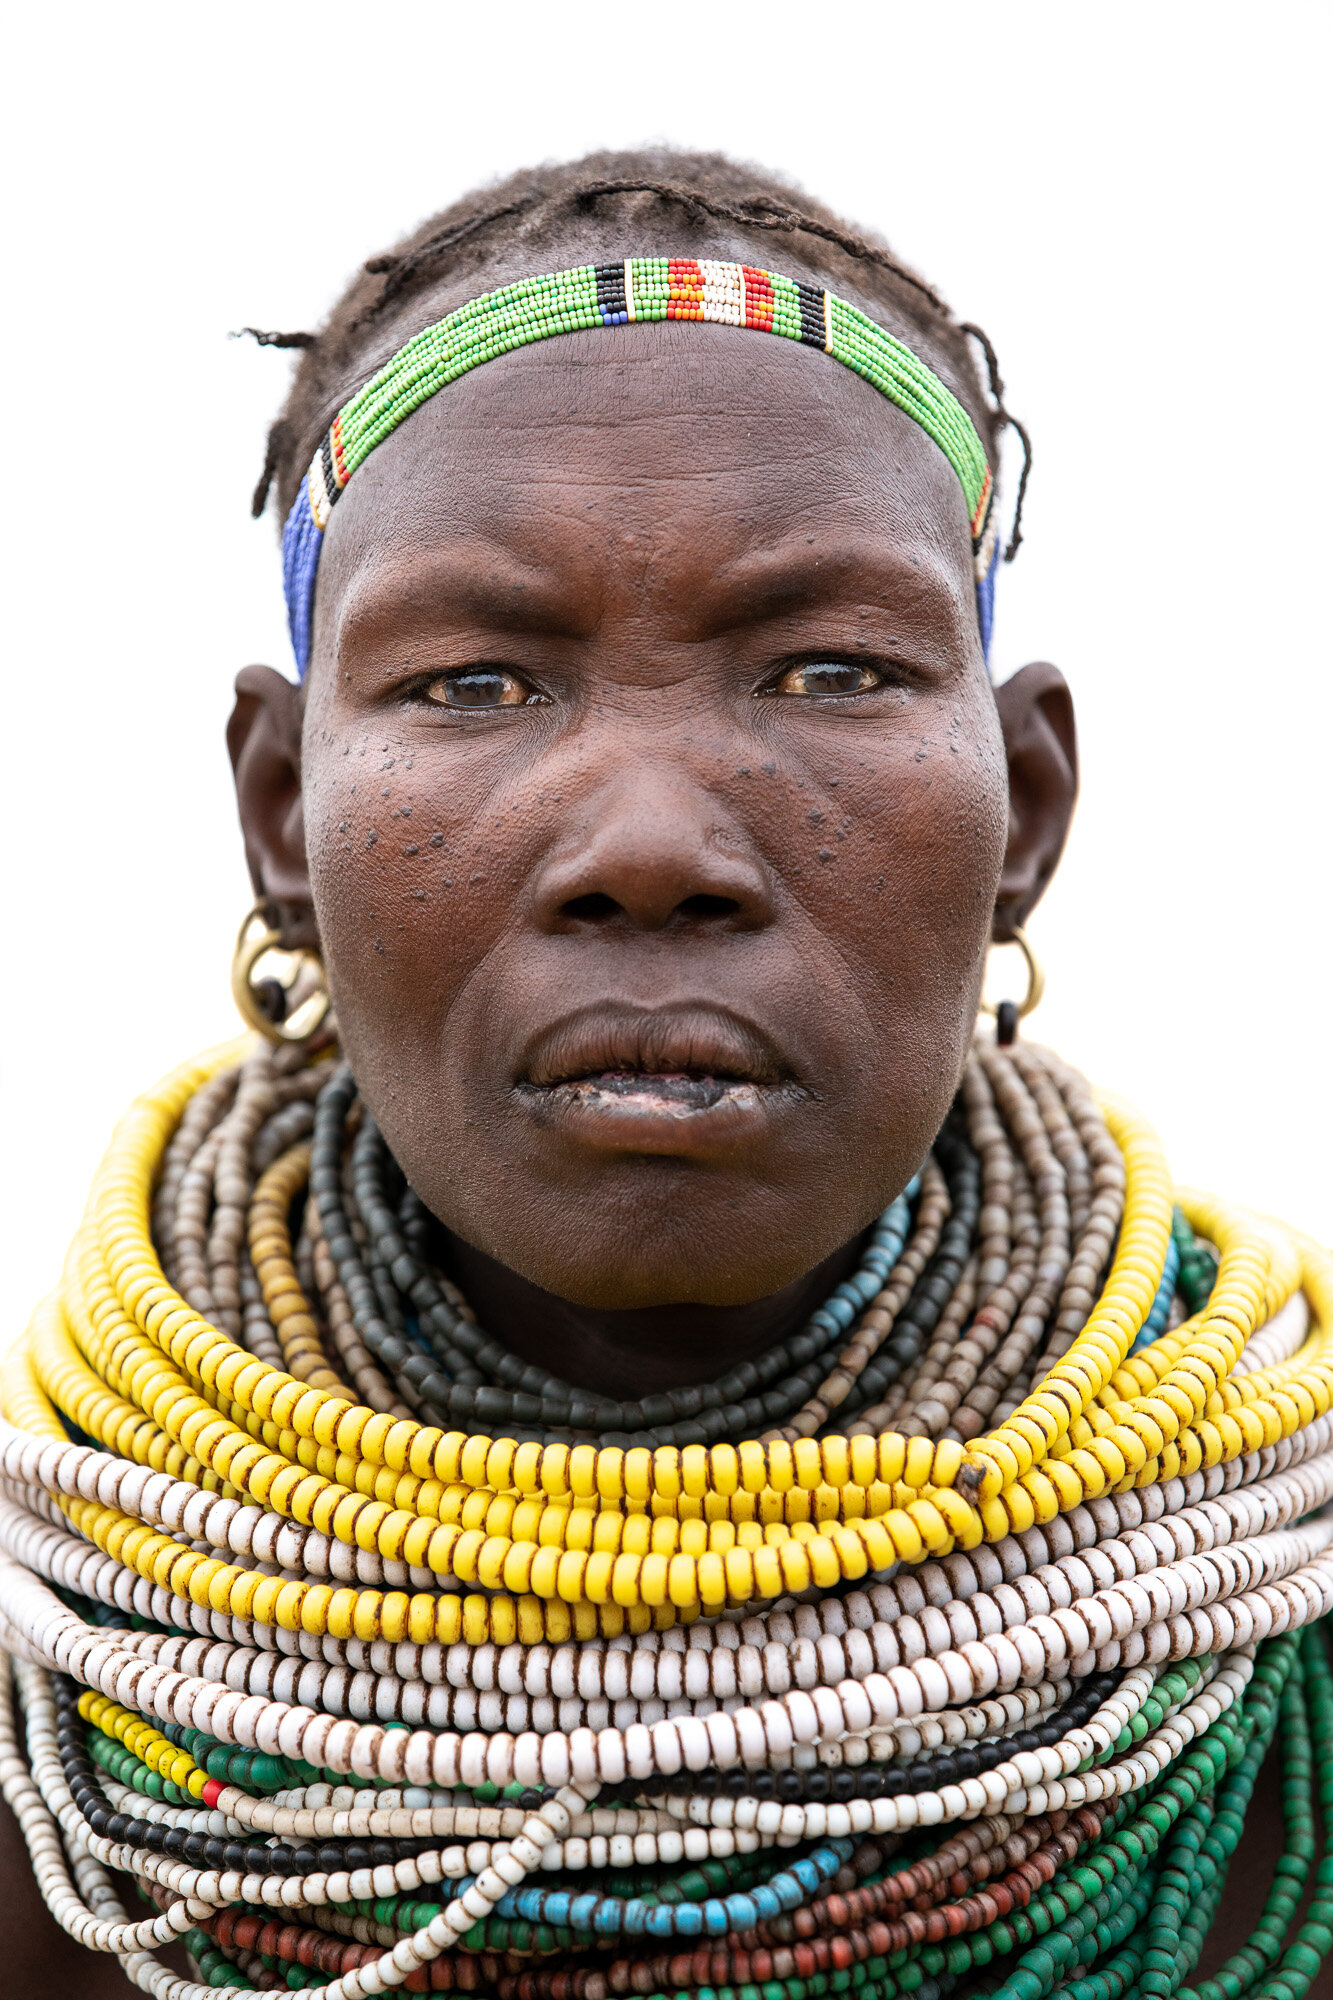 Nyangatom tribal woman portrait on Omo Valley photo tour